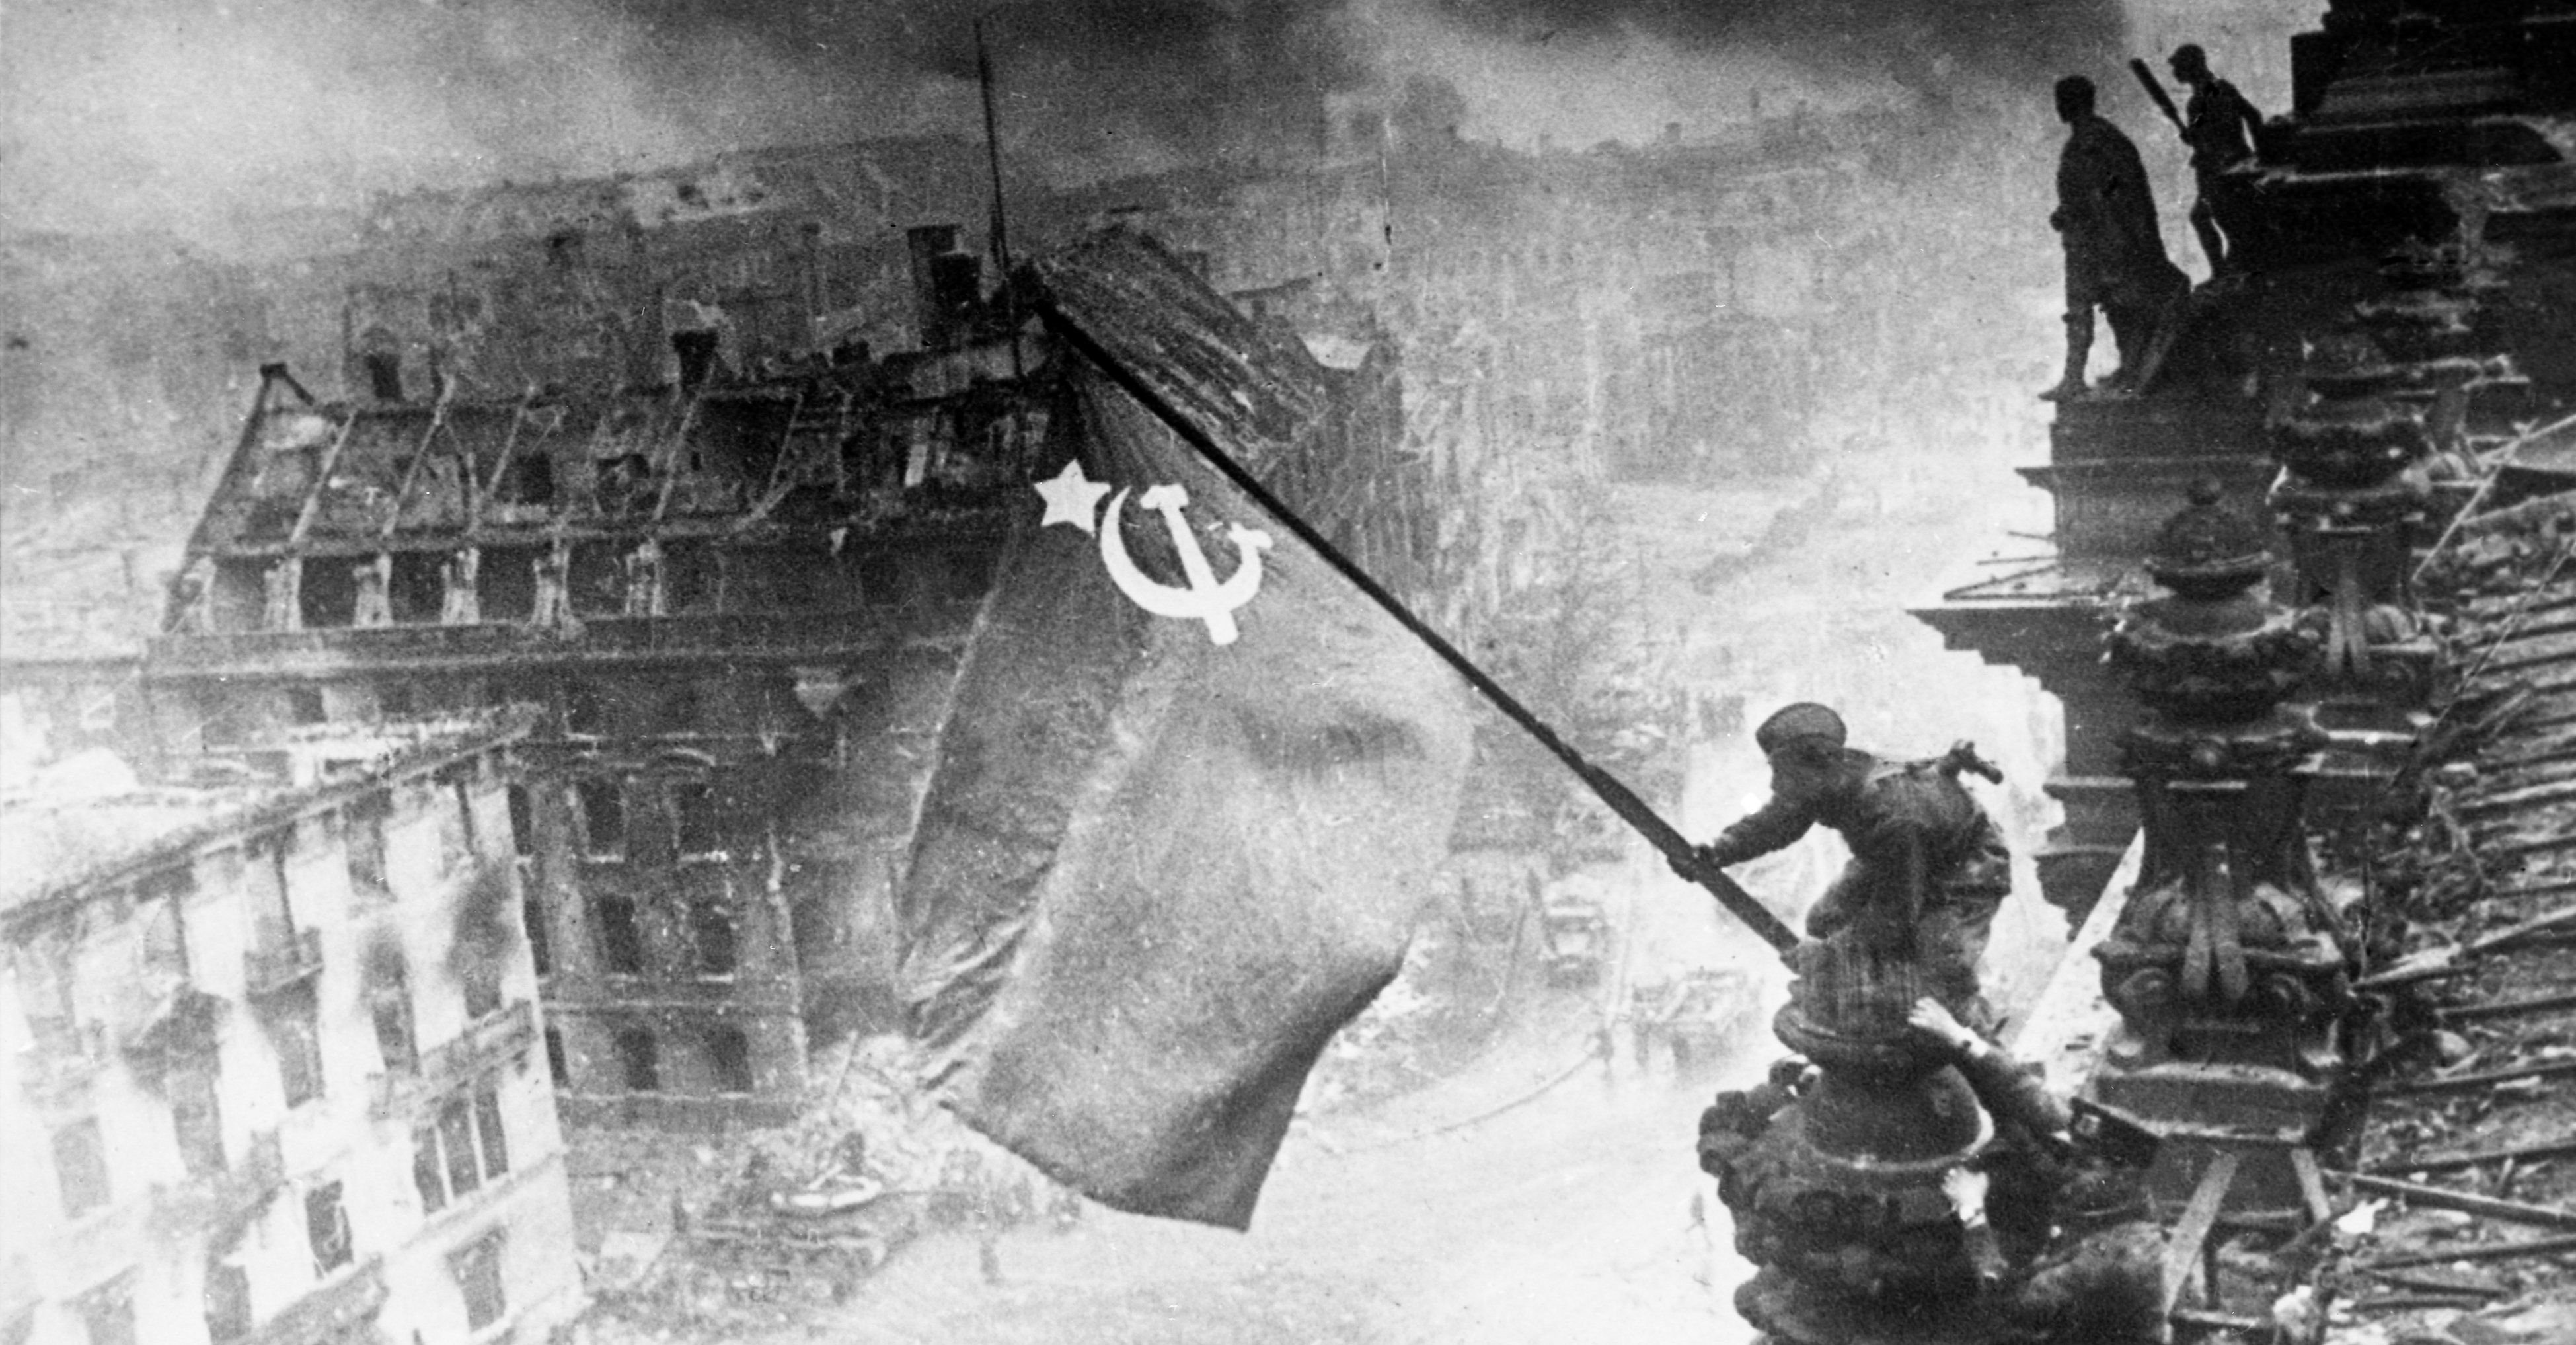 Знамя Победы на здании Рейхстага в Берлине